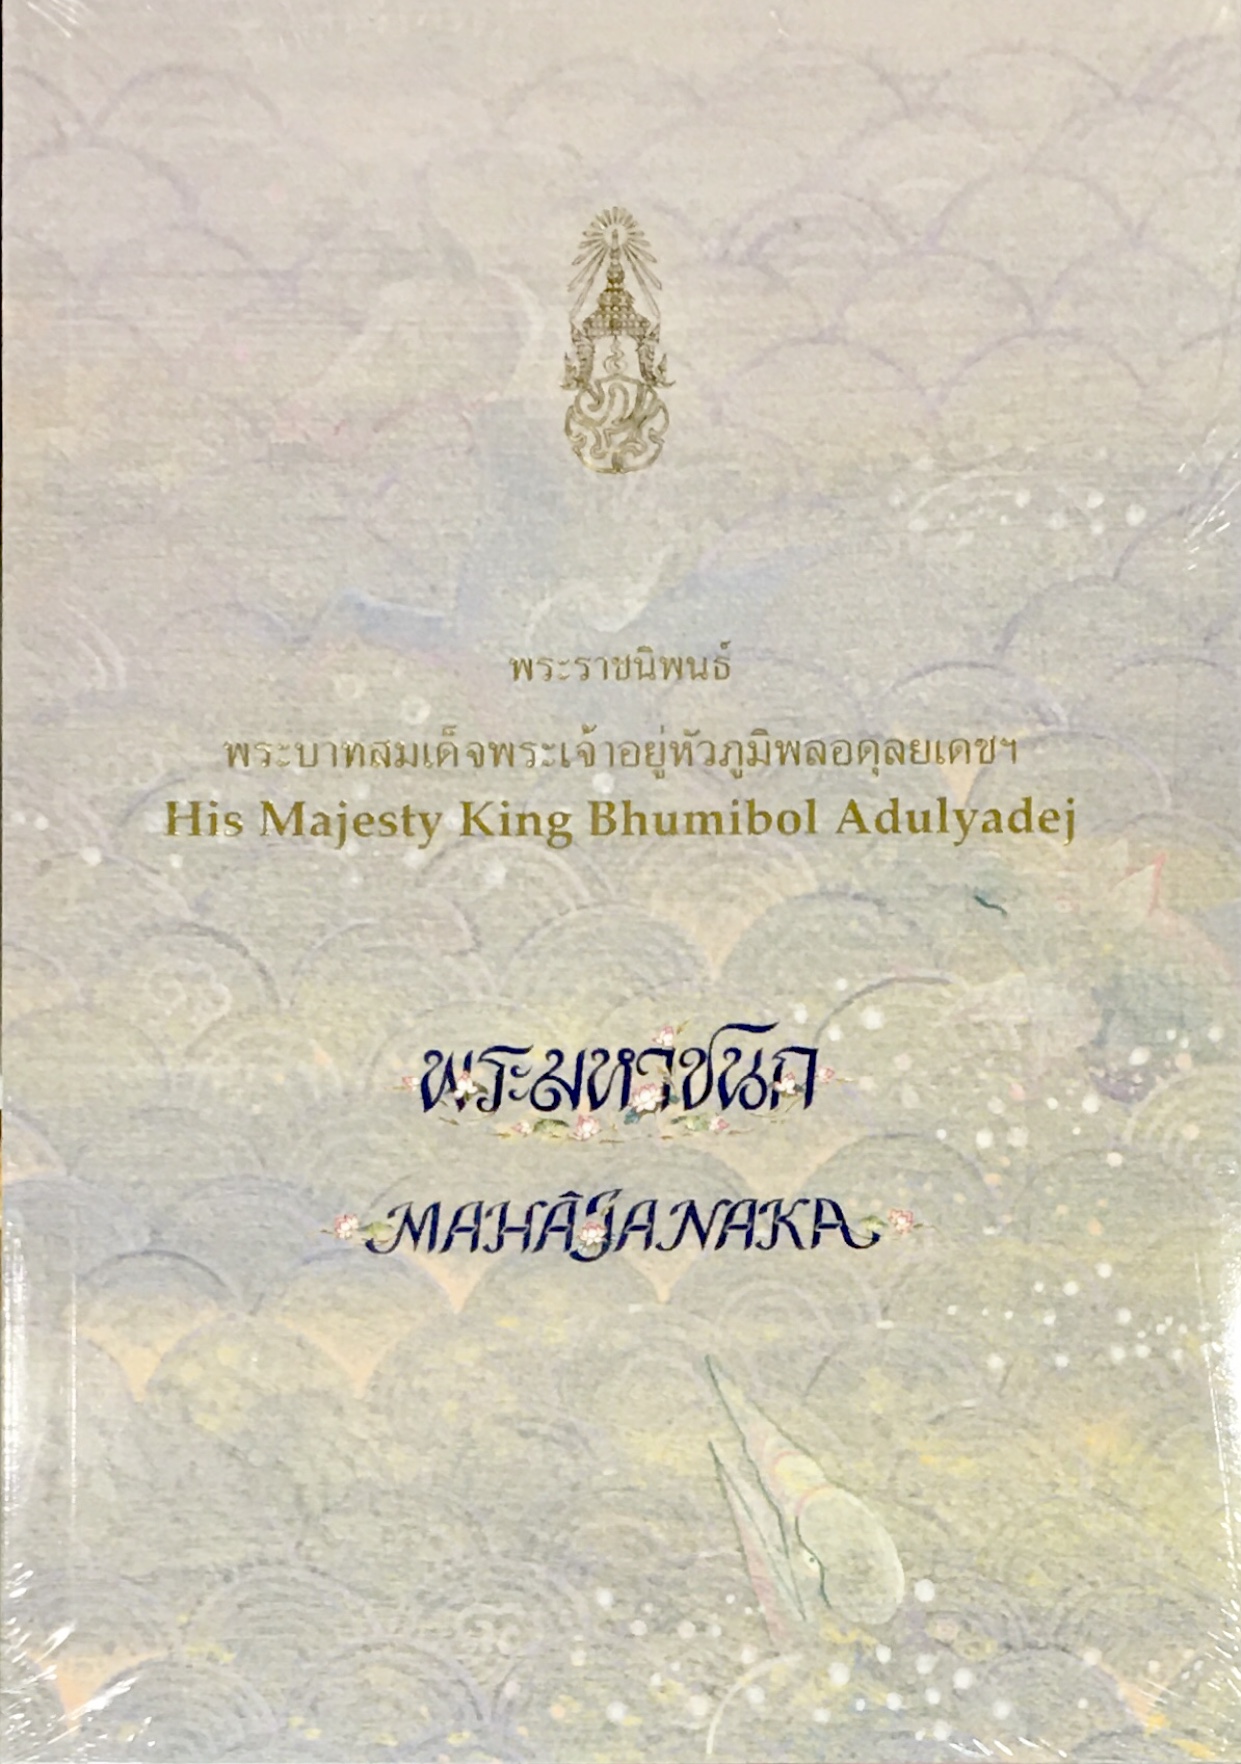 พระราชนิพนธ์ พระบาทสมเด็จพระเจ้าอยู่หัวภูมิพลอดุลยเดชฯ เรื่อง พระมหาชนก : The Story Of Mahajanaka By His Majesty King Bhumibol Adulyadej